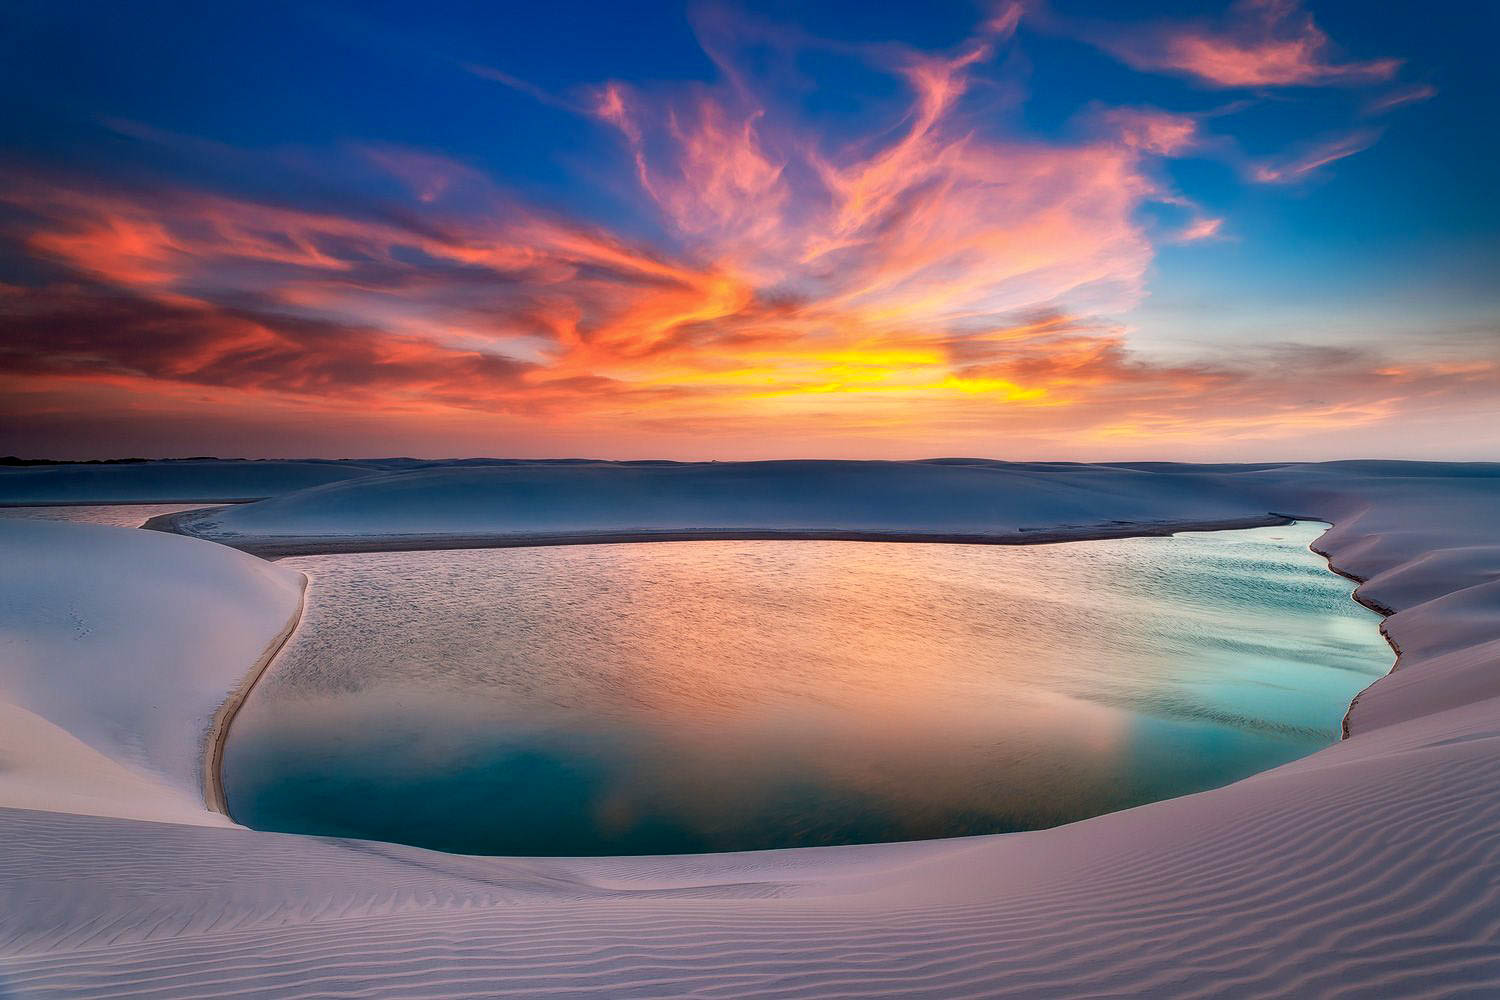 Bí mật tiên cảnh tuyệt đẹp có hàng nhìn hố nước giữa lòng sa mạc - 2